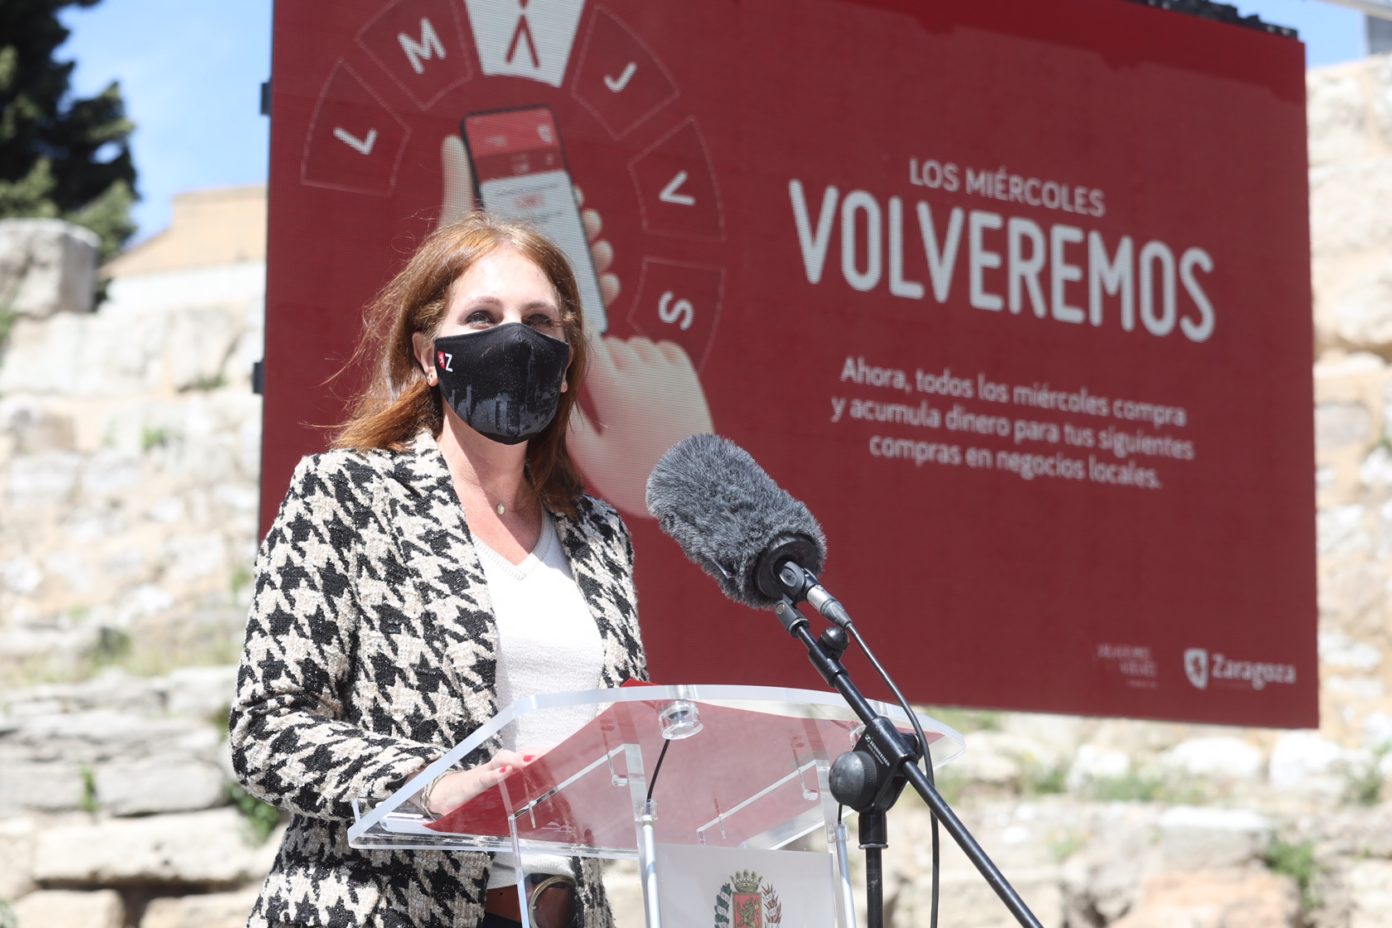 Herrarte during the presentation of Volveremos 2021. (Zaragoza City Council)